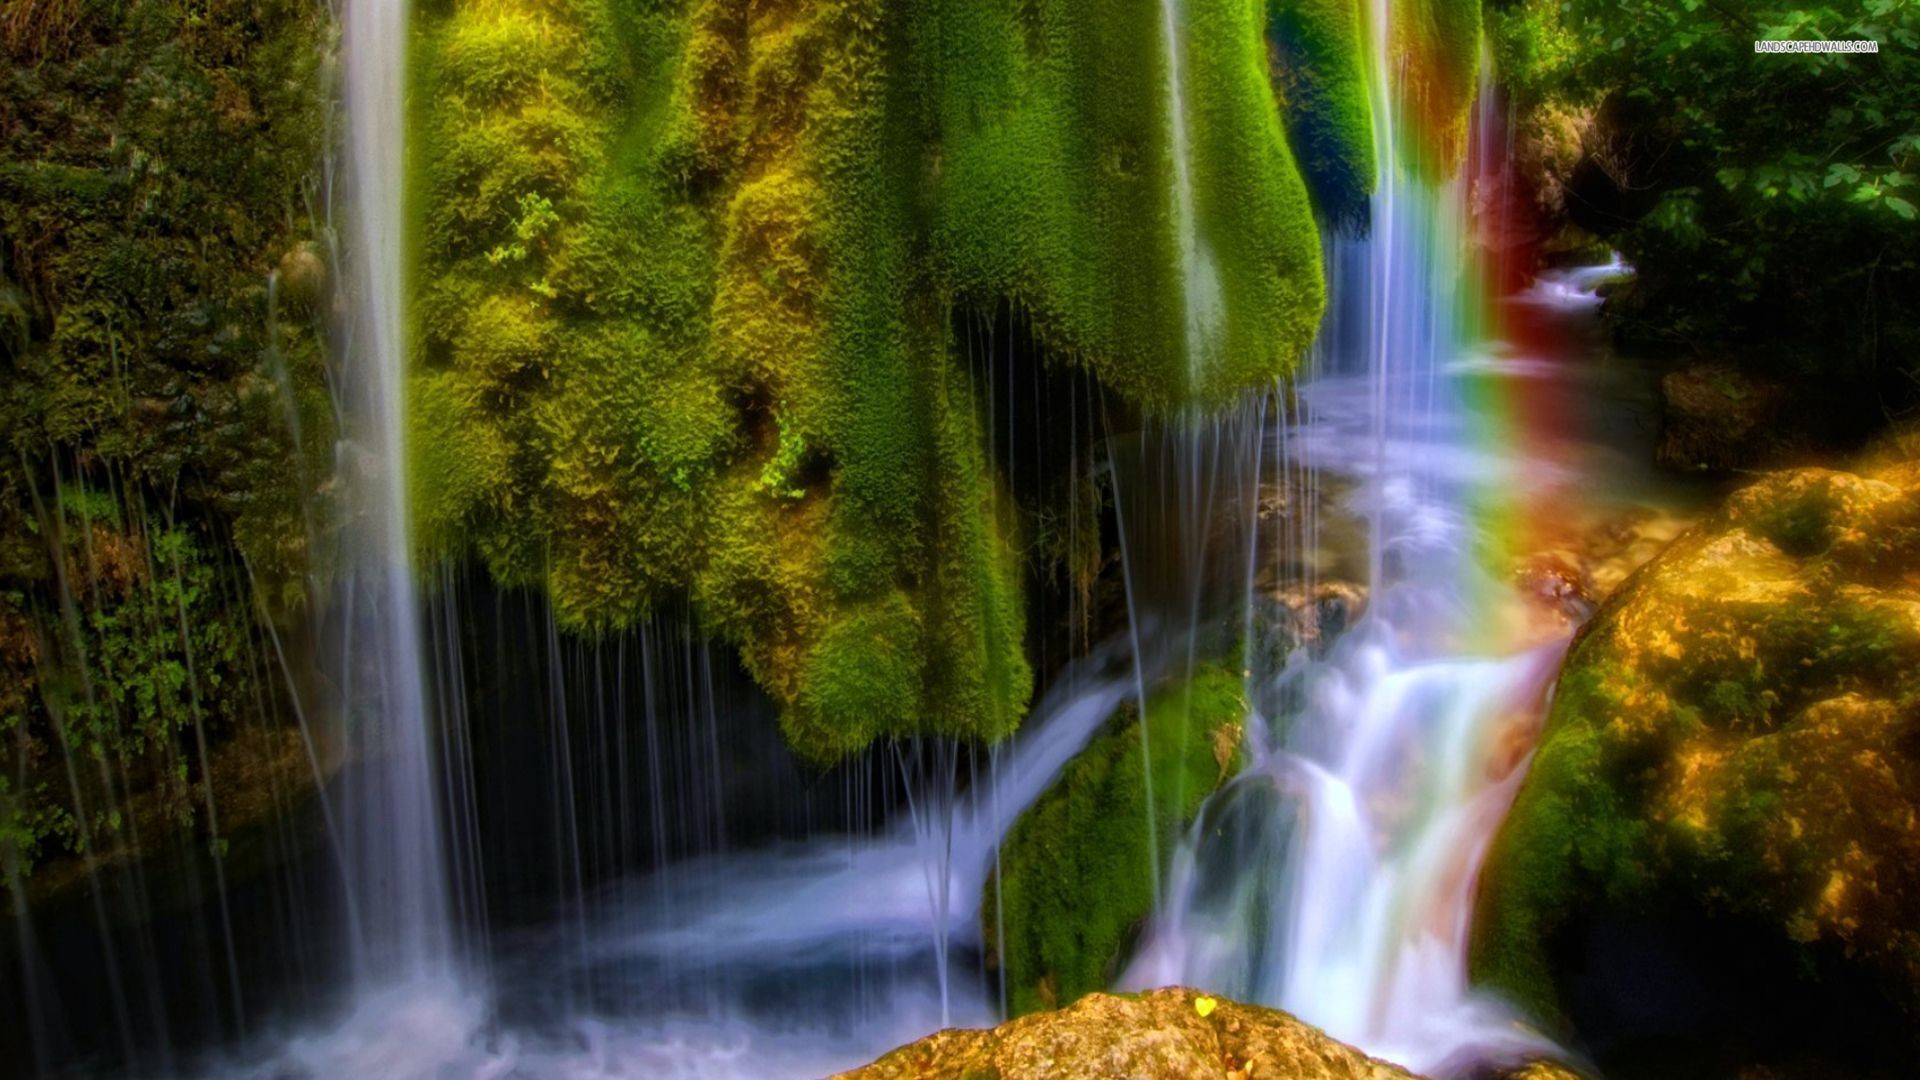 Обои на телефон живой водопад. Красивые водопады. Сказочный водопад. Живая природа водопады. Обои для рабочего стола водопады живые.